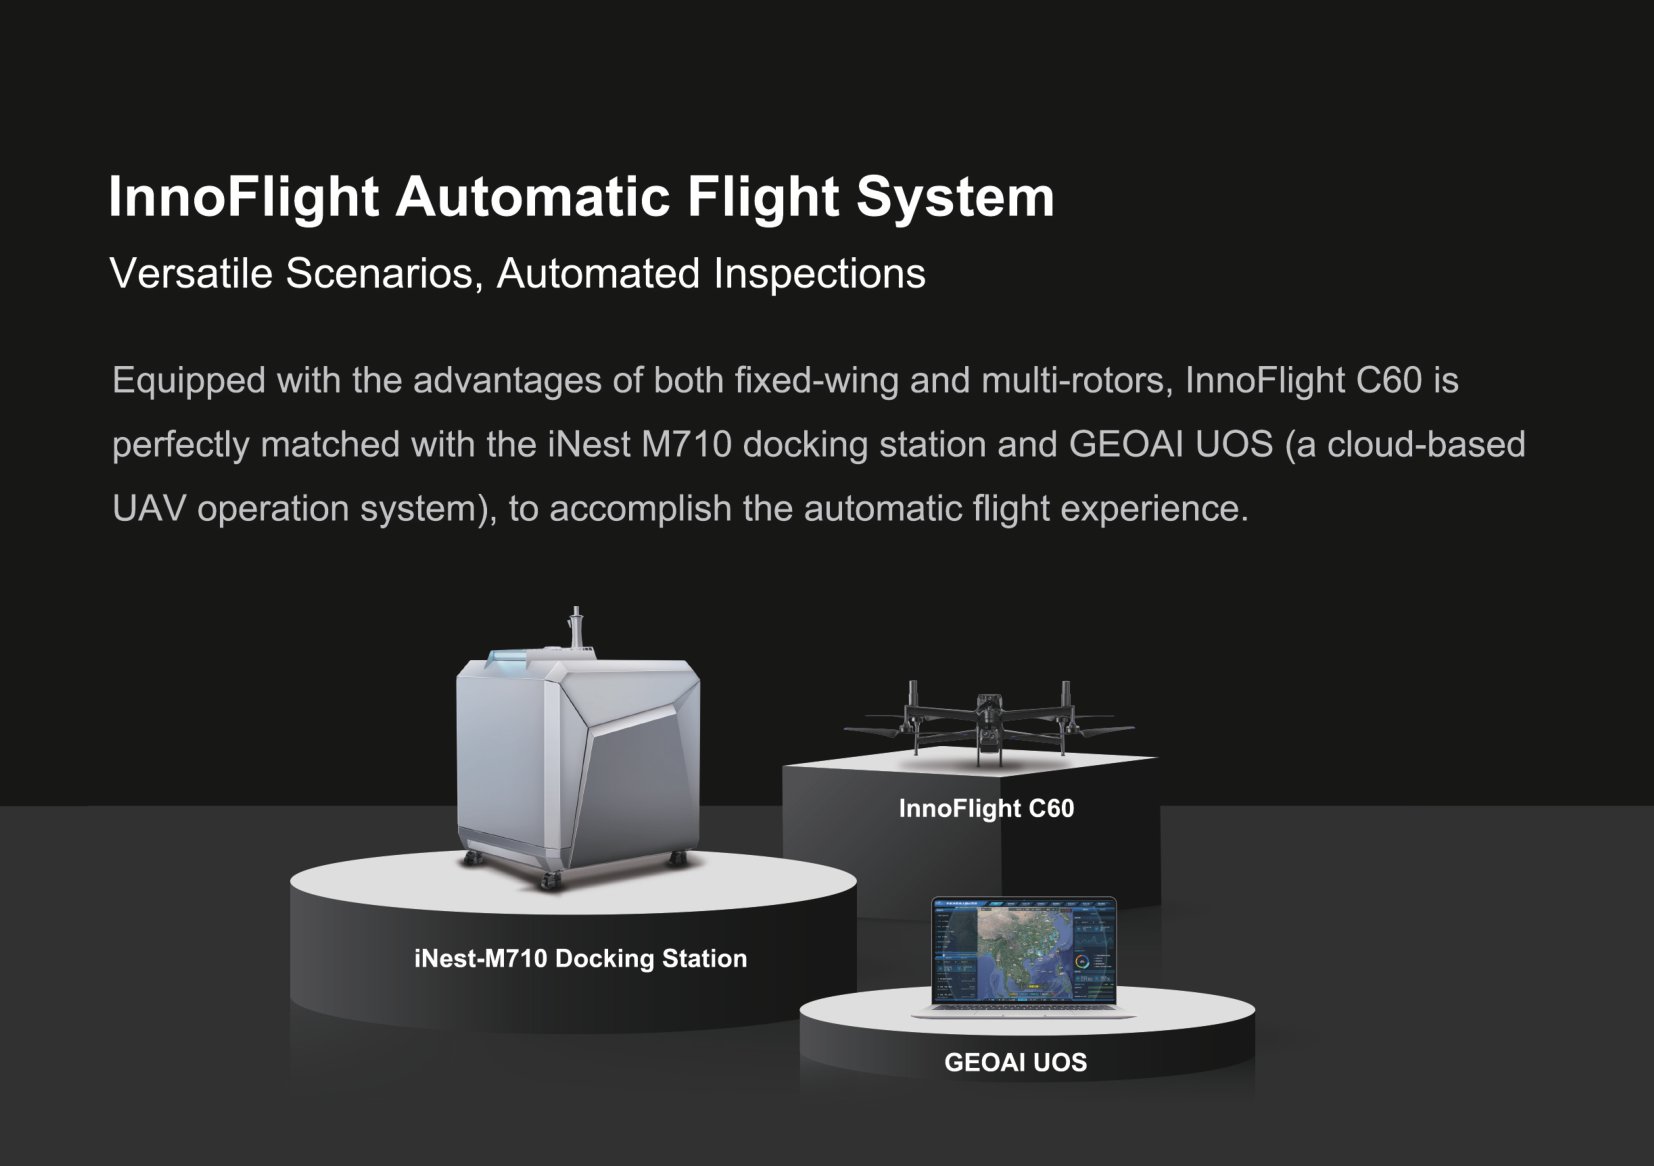 InnoFlight Automatic Flight System Details 02